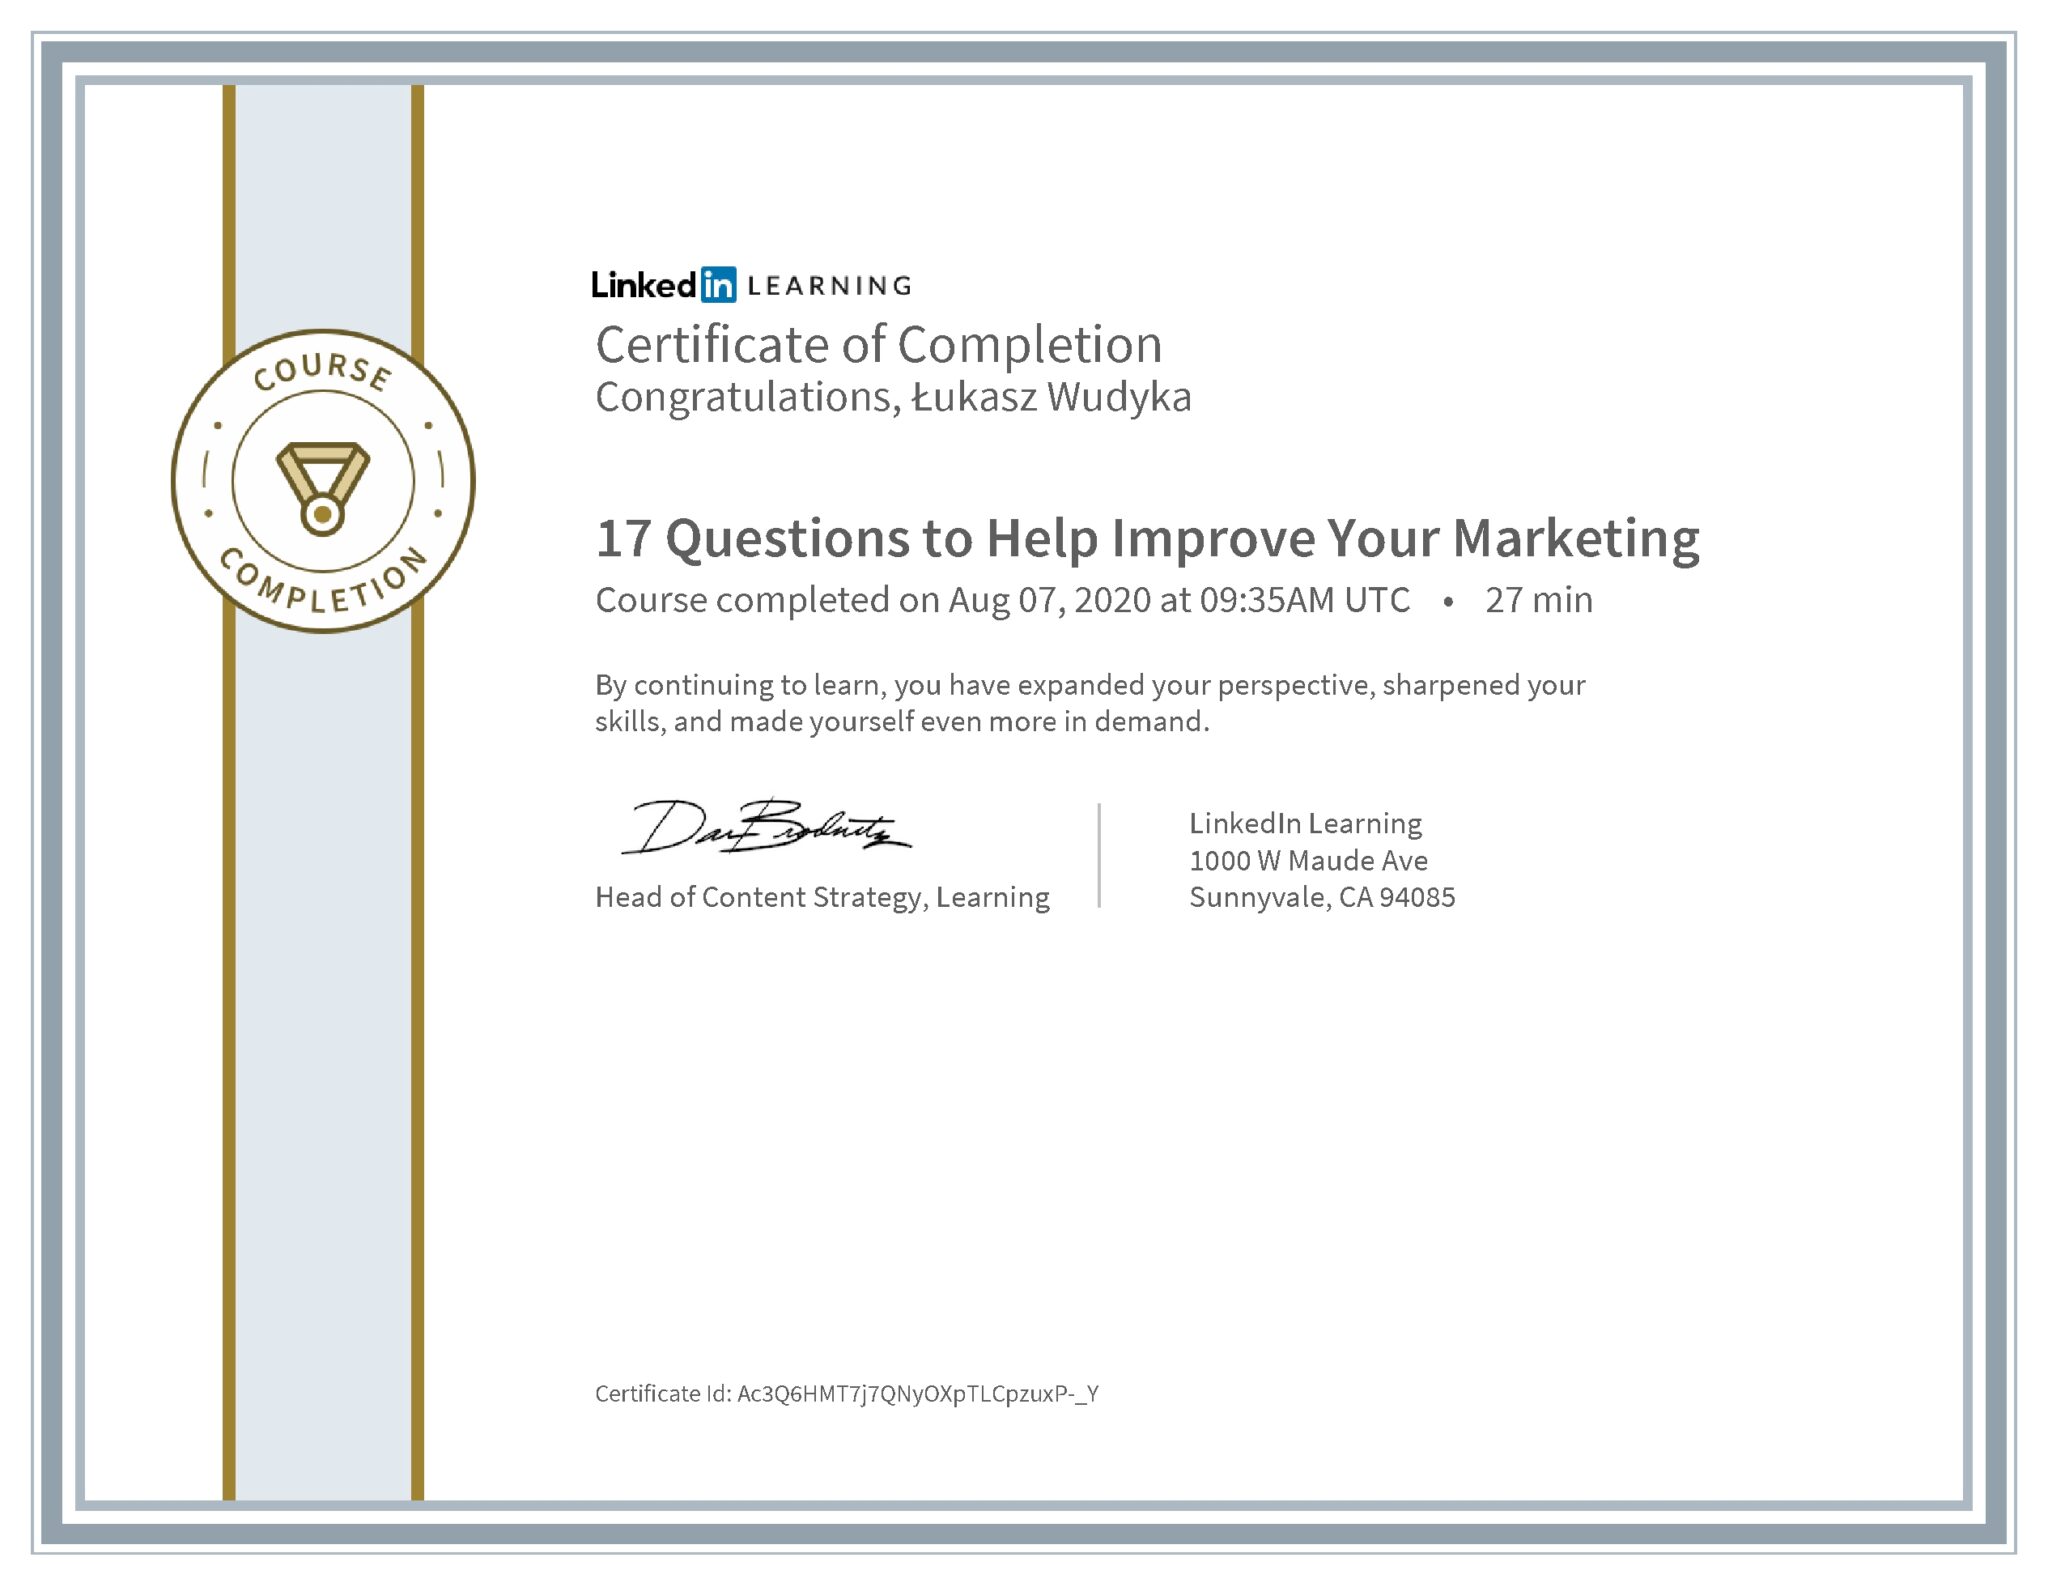 Łukasz Wudyka certyfikat LinkedIn 17 Questions to Help Improve Your Marketing